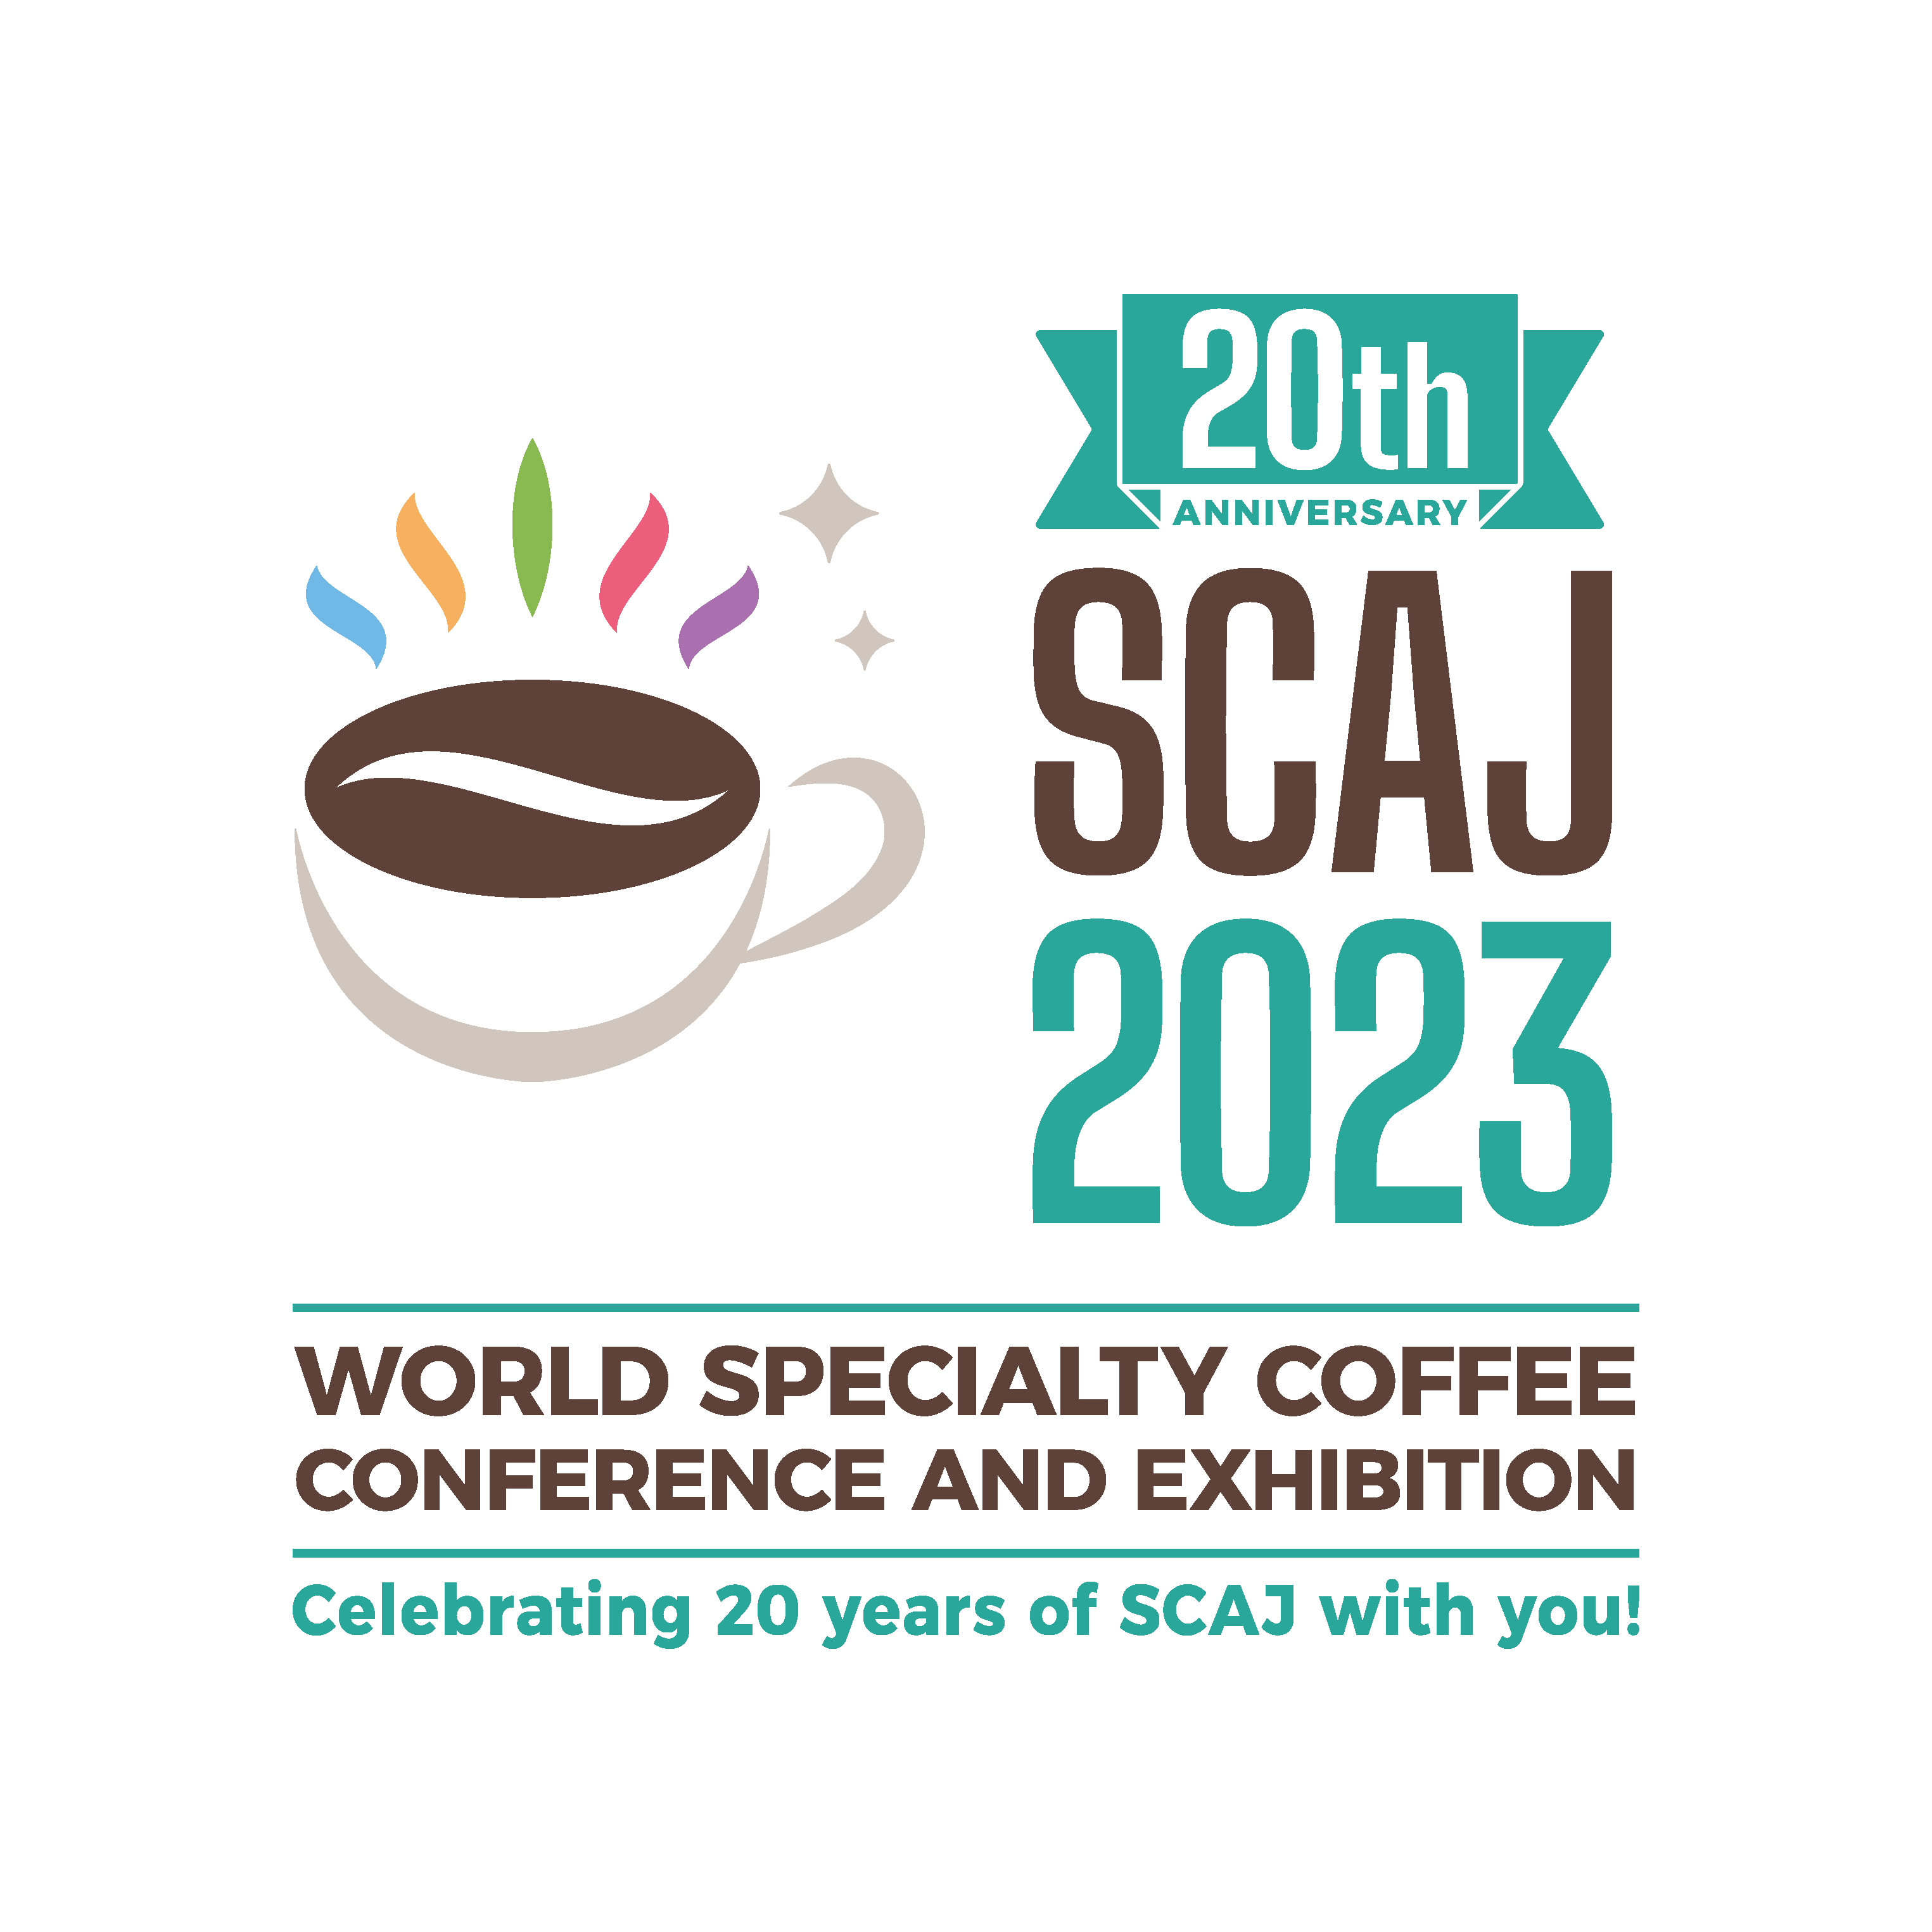 スペシャルティコーヒー業界関係者が世界中から集まる、
年に一度のコーヒーの祭典
「SCAJ ワールド スペシャルティコーヒー カンファレンス 
アンド エキシビション 2023」を開催